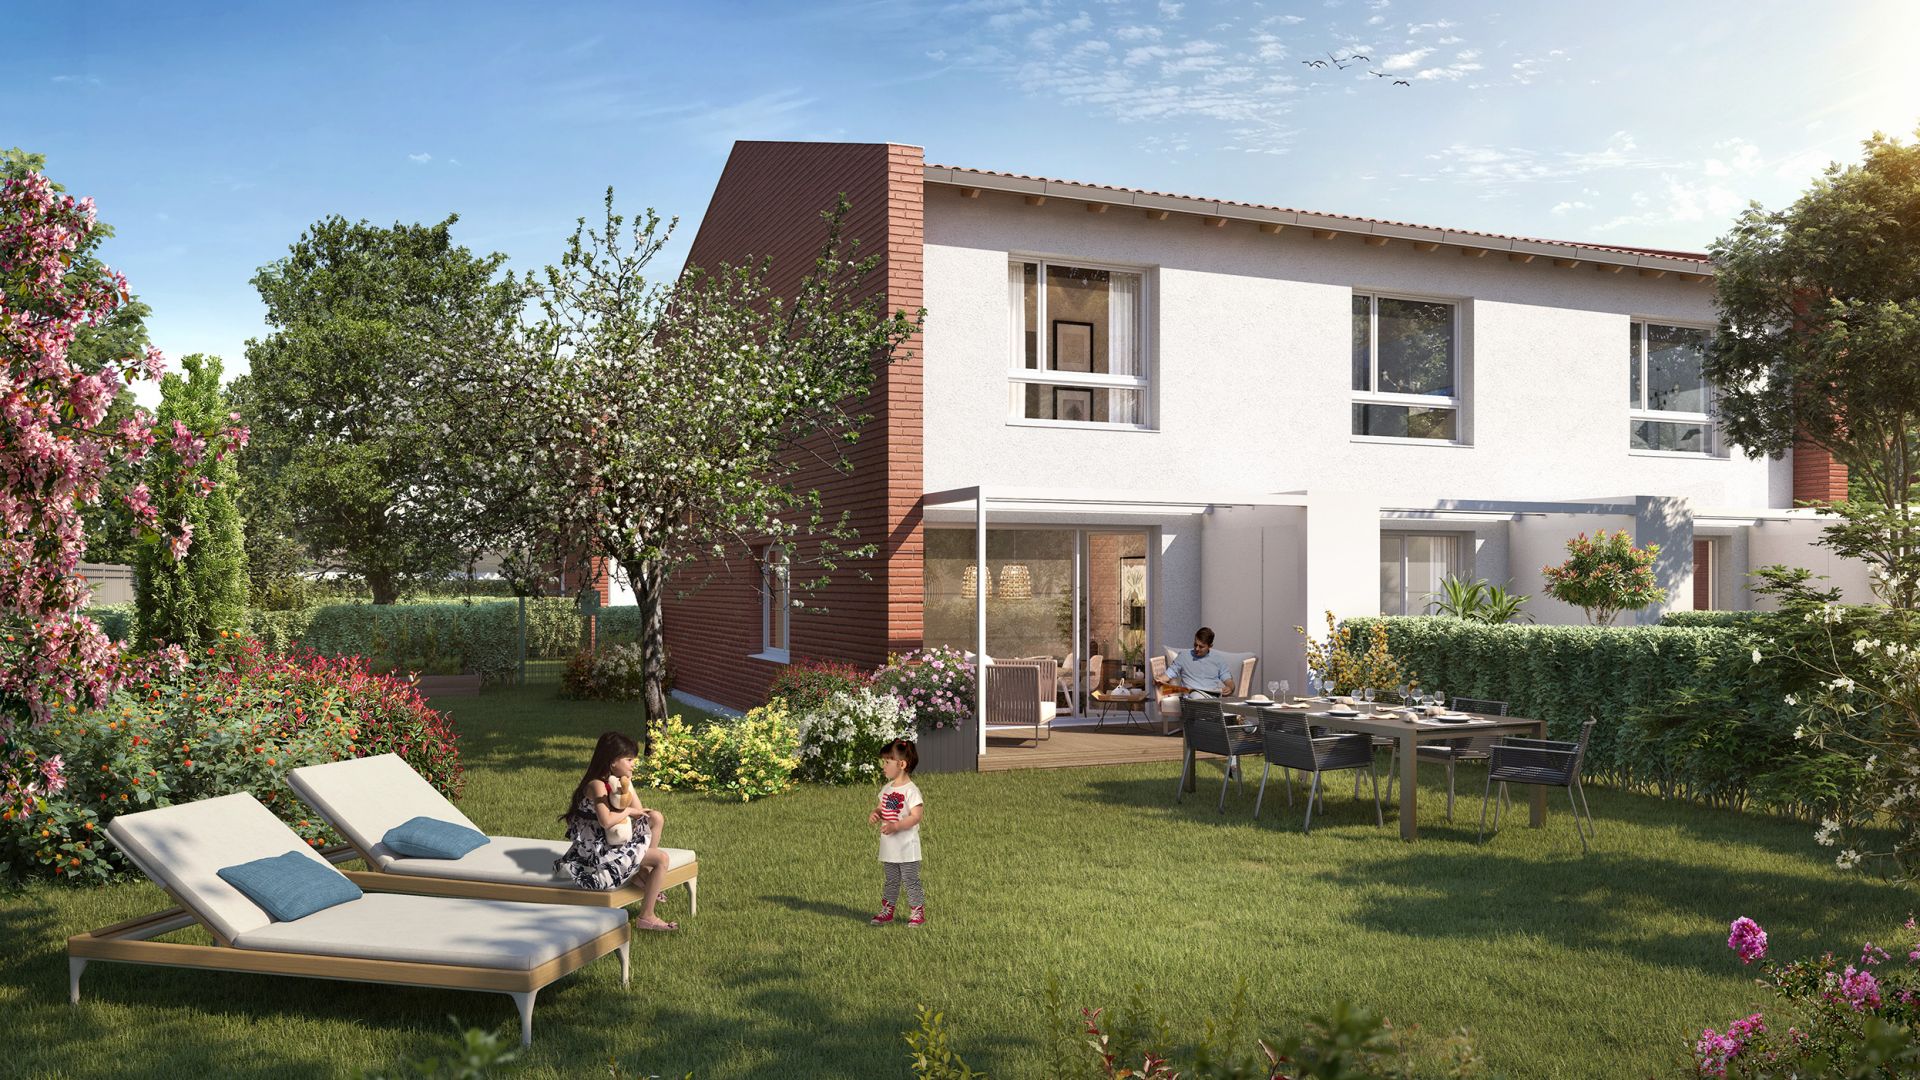 Greencity immobilier - achat immobilier neuf - appartements et villas du T2au T4 - Résidence Le Gardénia -31100 Toulouse Saint-Simon - villa T4